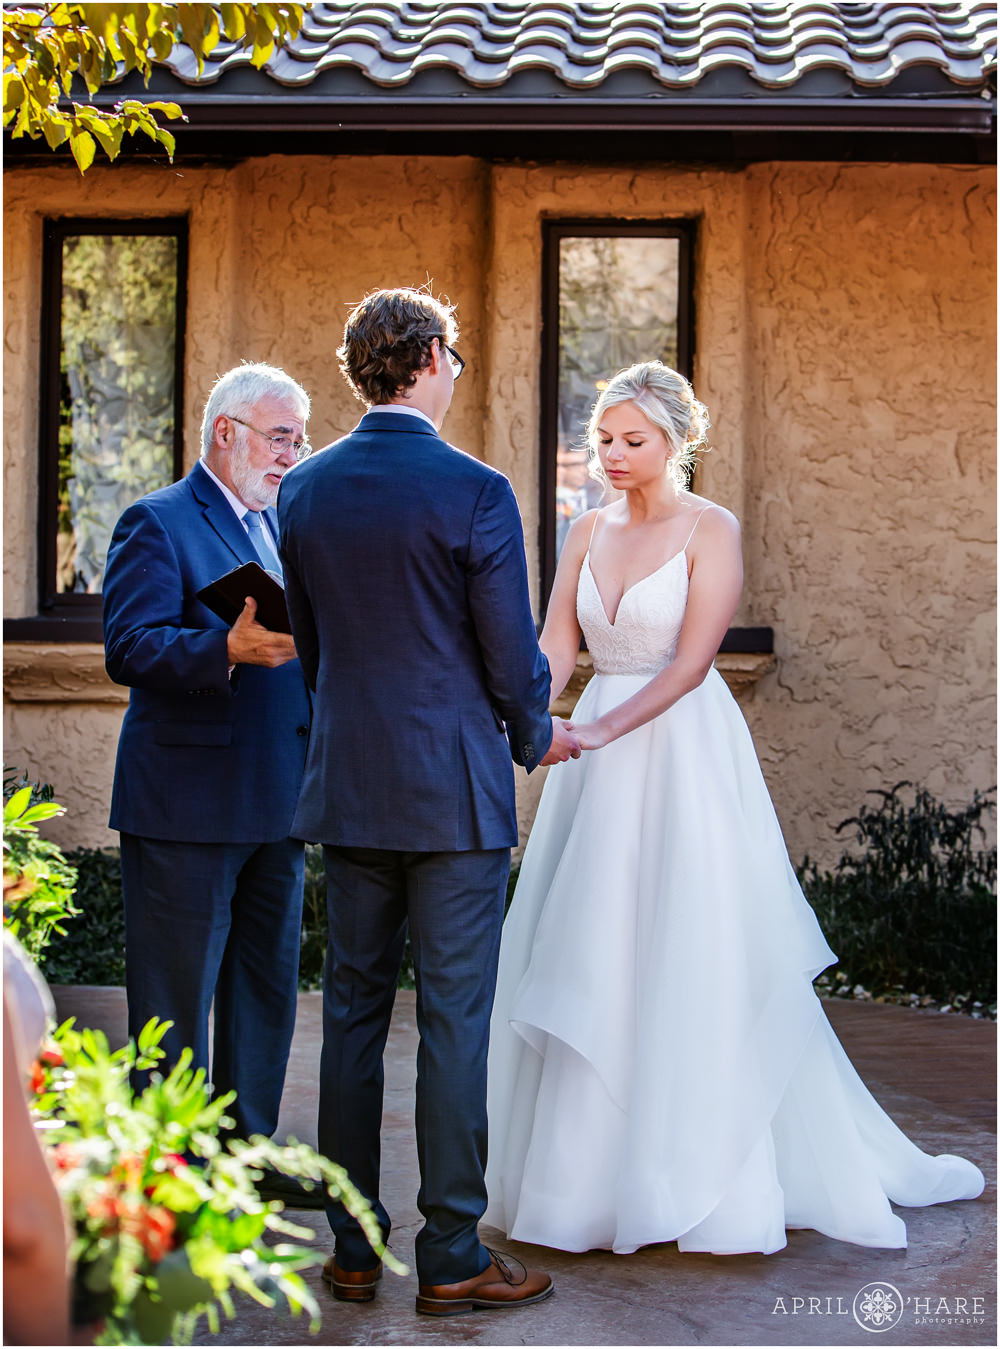 Outdoor courtyard wedding photo during fall at Villa Parker Colorado